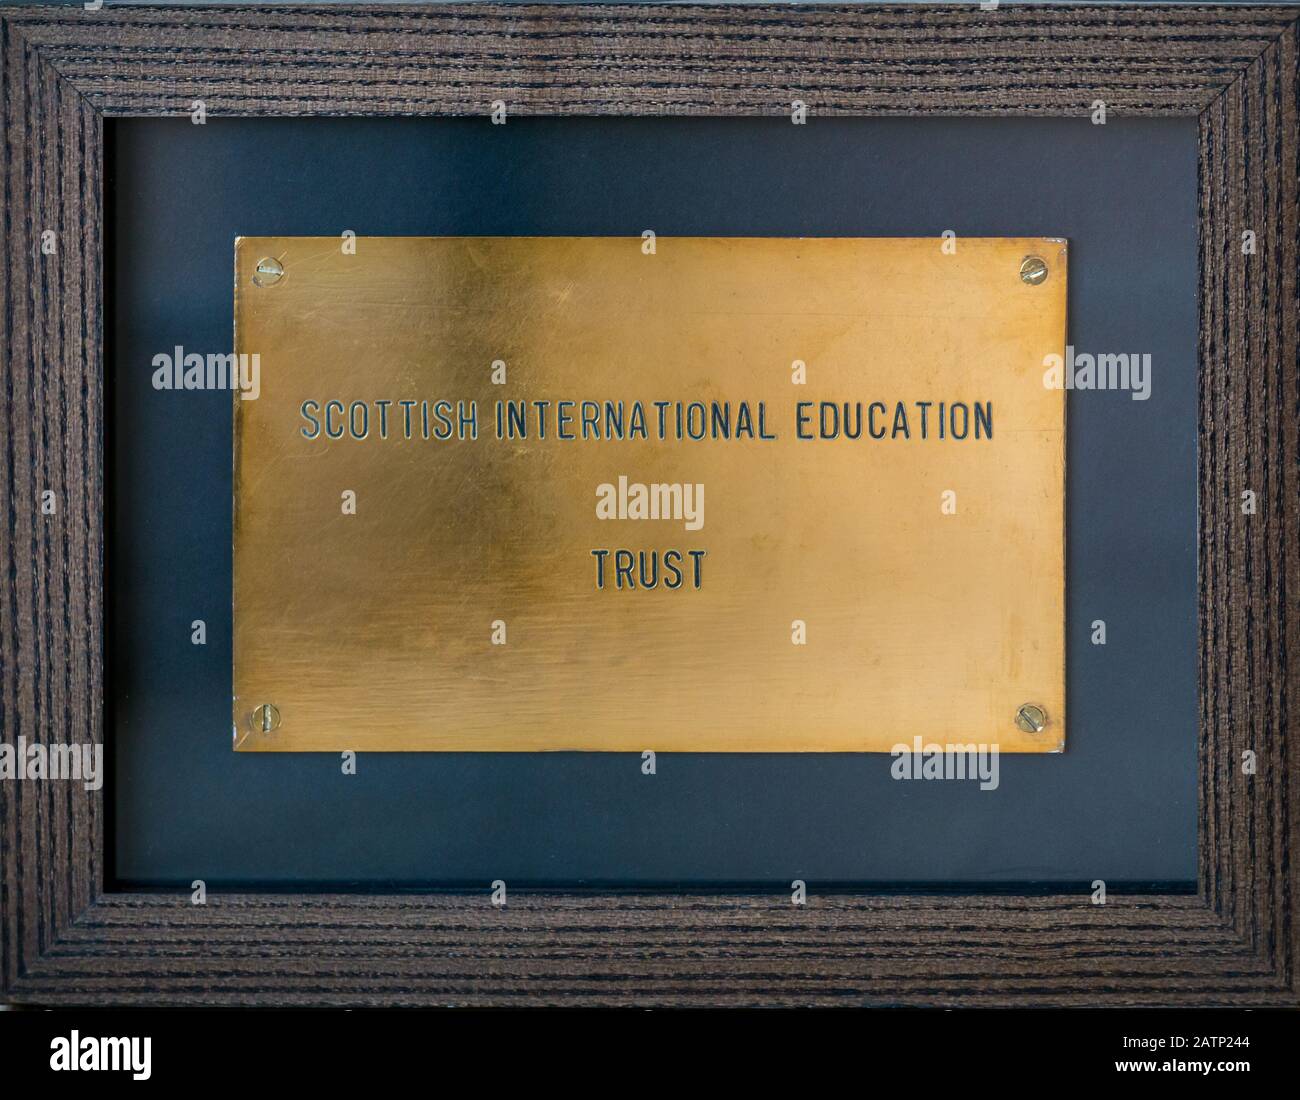 Gerahmte Türplatte aus Messing des Scottish International Education Trust (SIET, gegründet von Sean Connery & Jackie Stewart) Office, Edinburgh, Schottland, Großbritannien Stockfoto